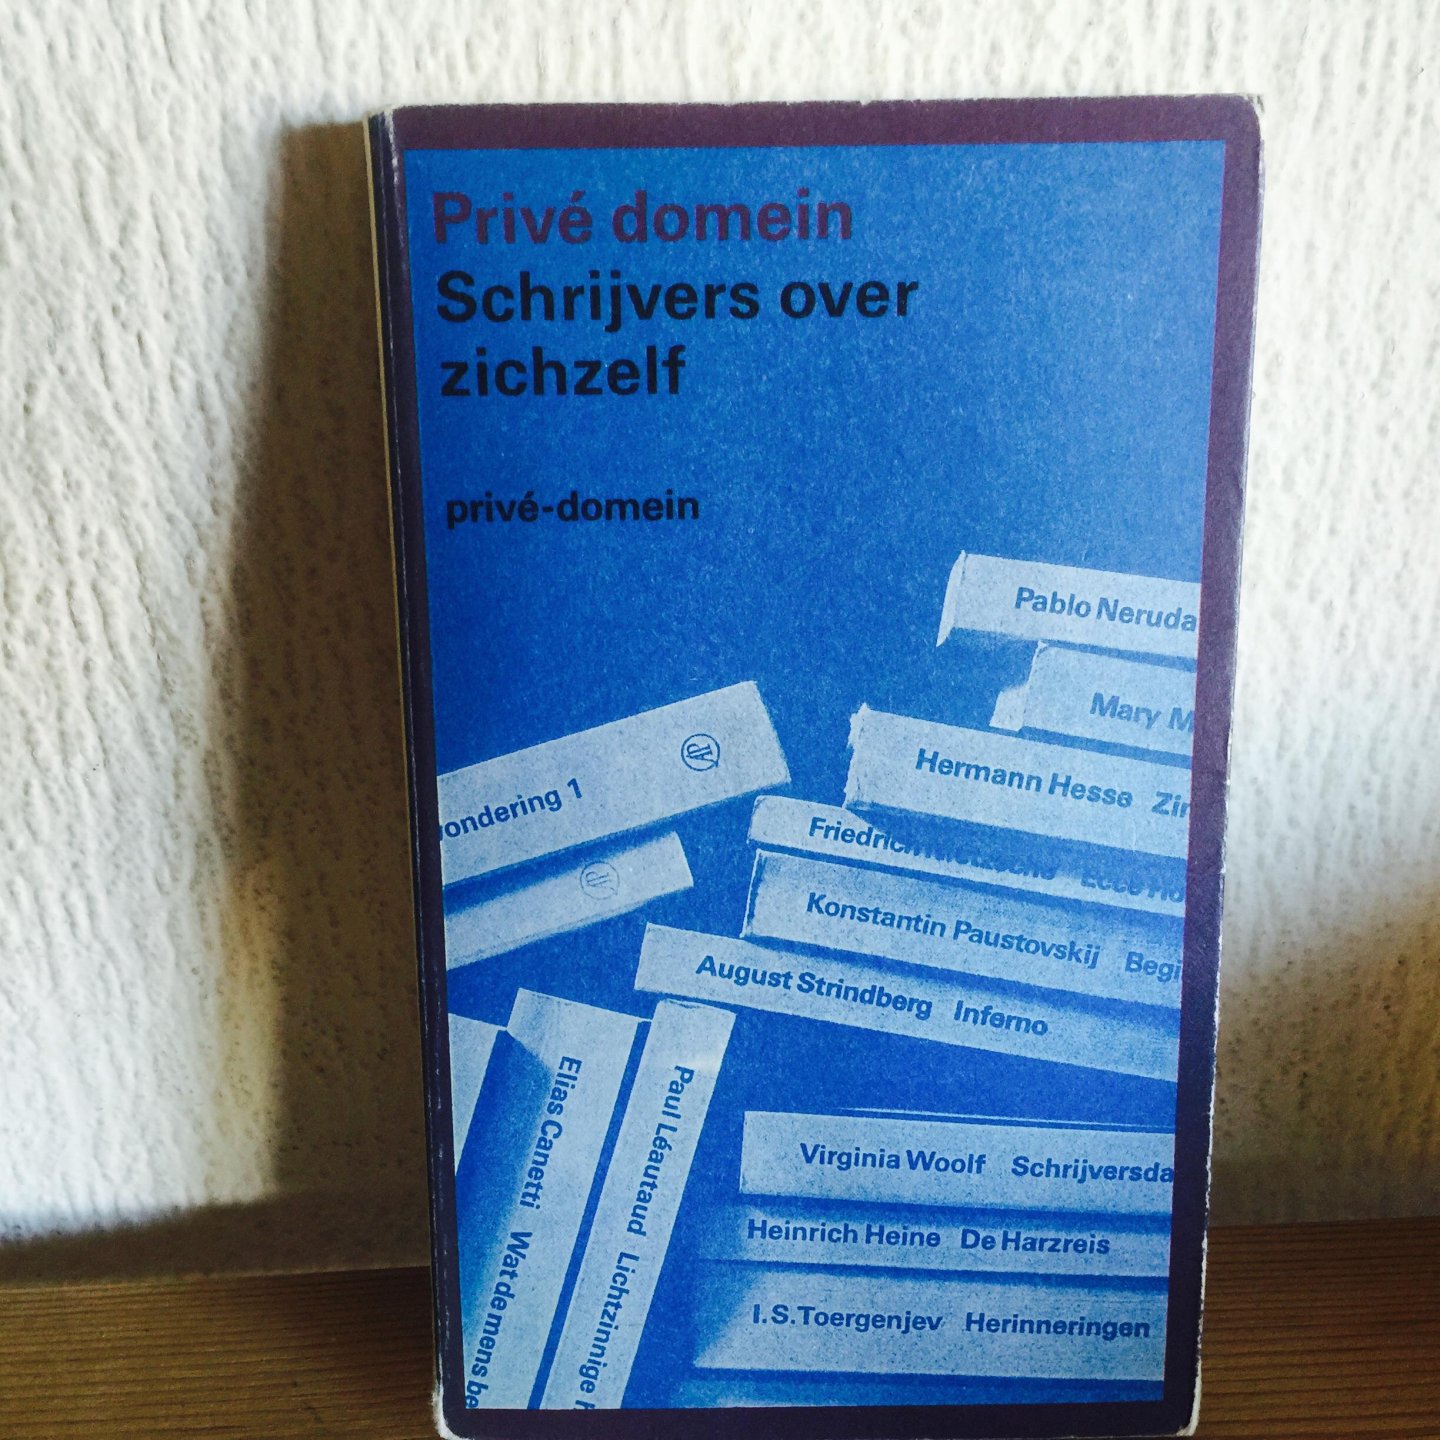 Sontrop - Schryvers over zichzelf / druk 1 , prive domein , schrijvers over zichzelf